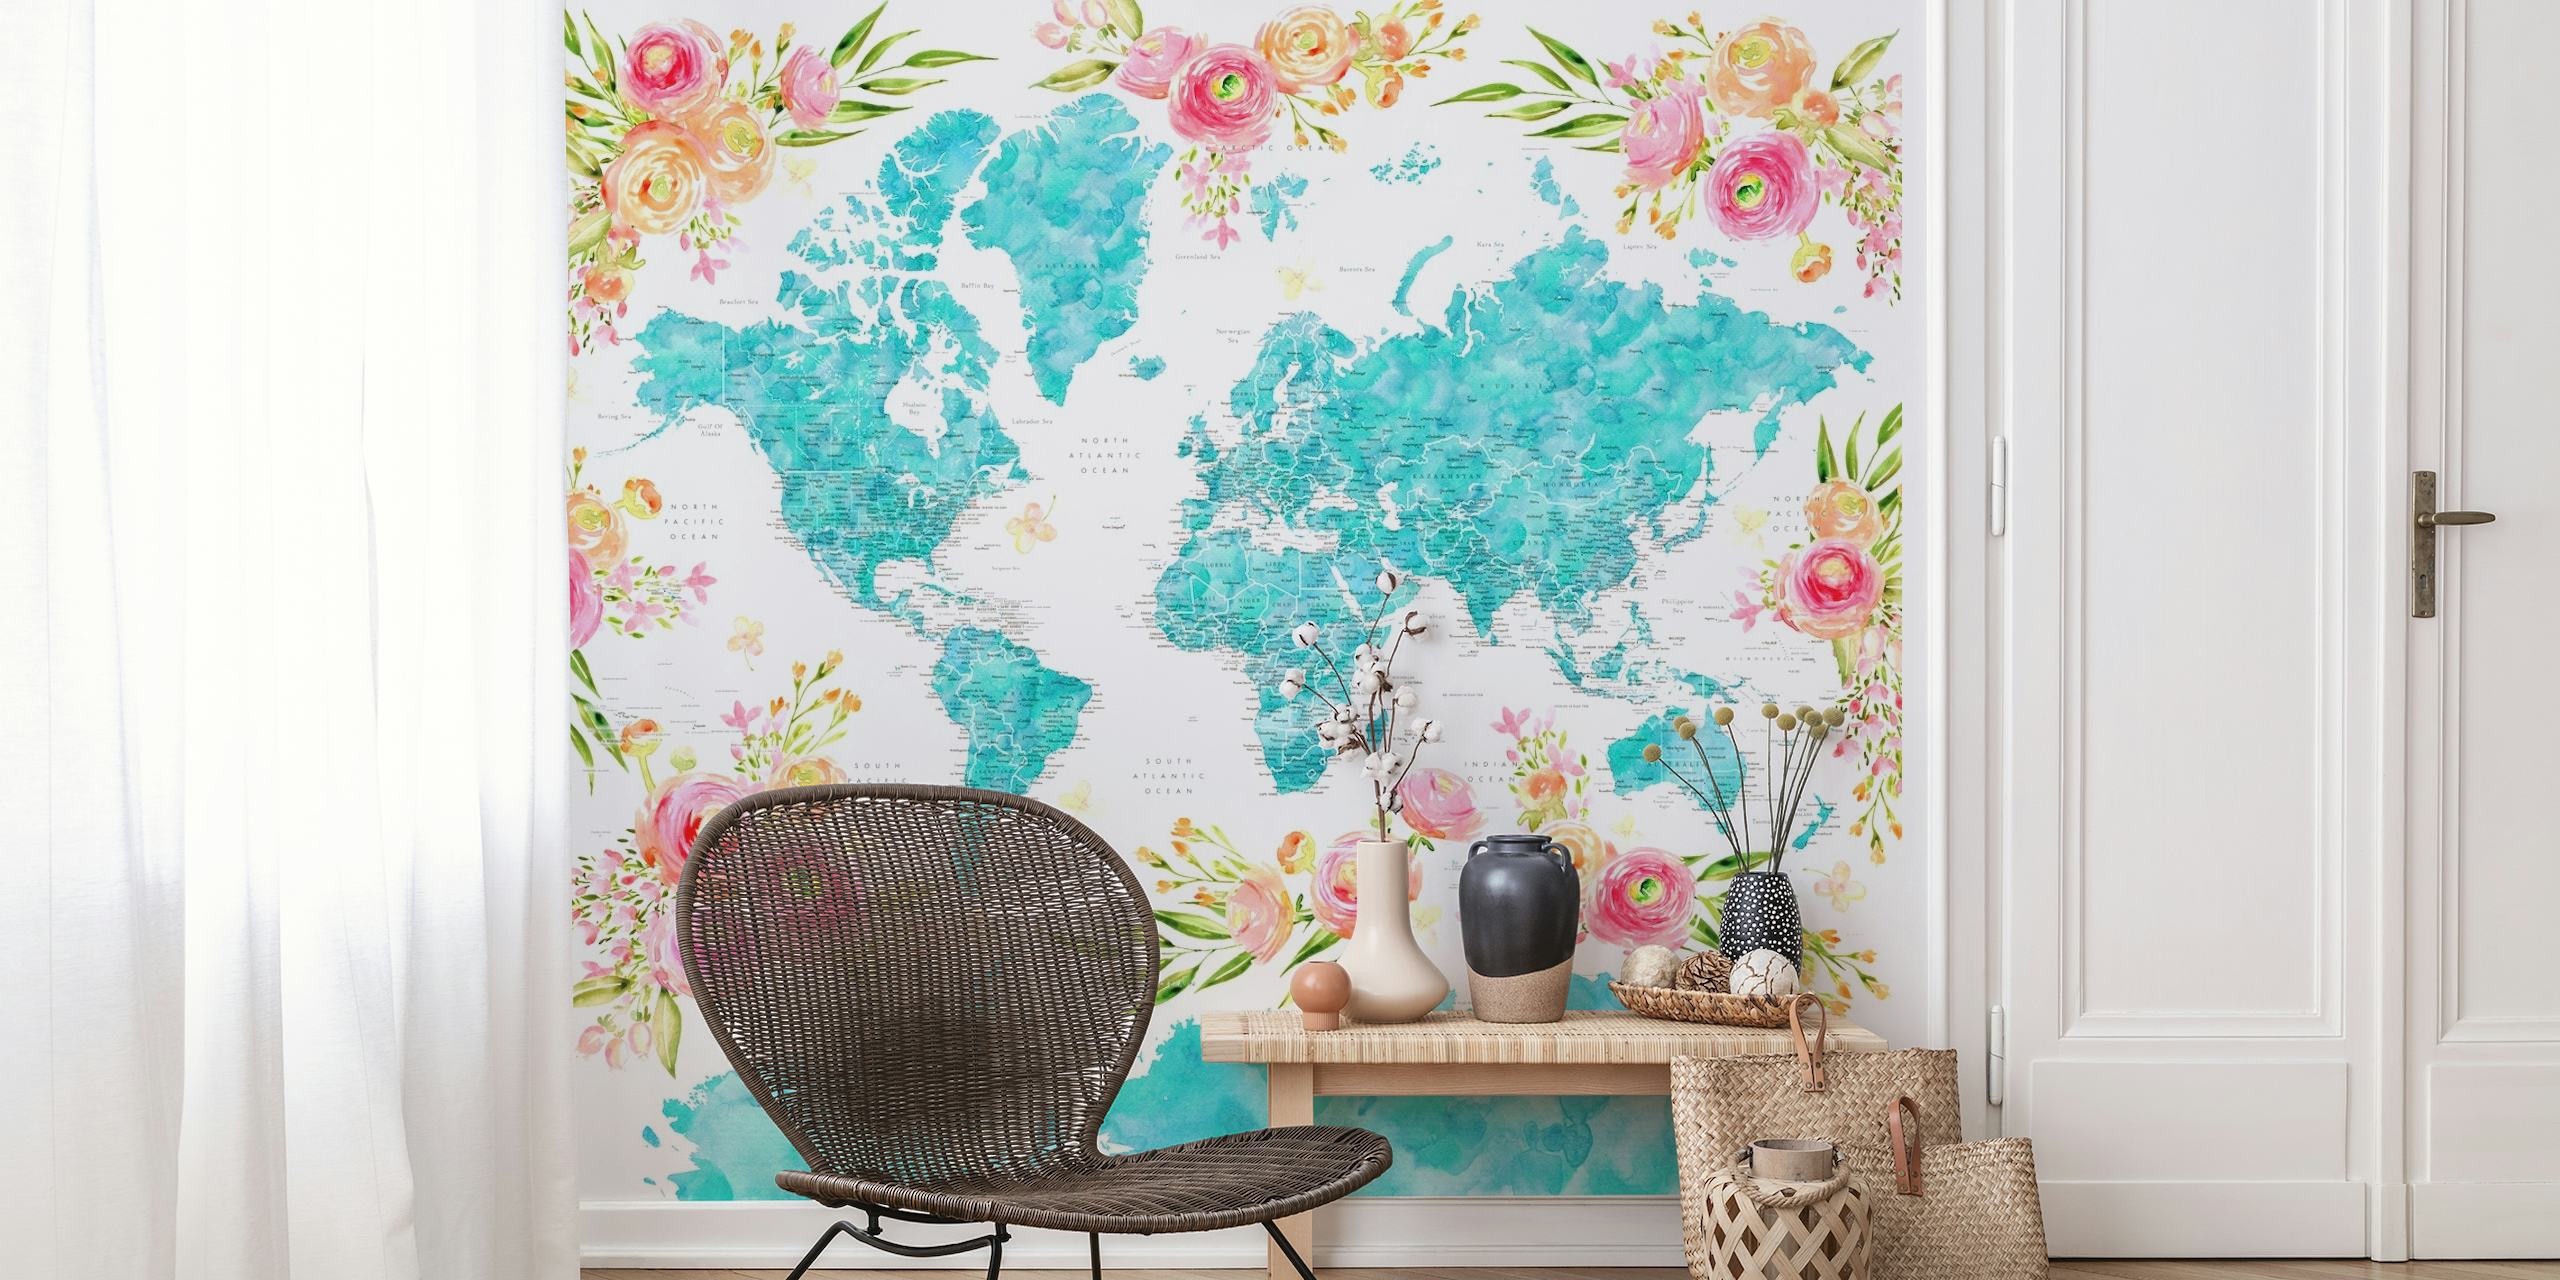 Kleurrijke wereldkaart muurschildering met bloempatronen die de continenten versieren